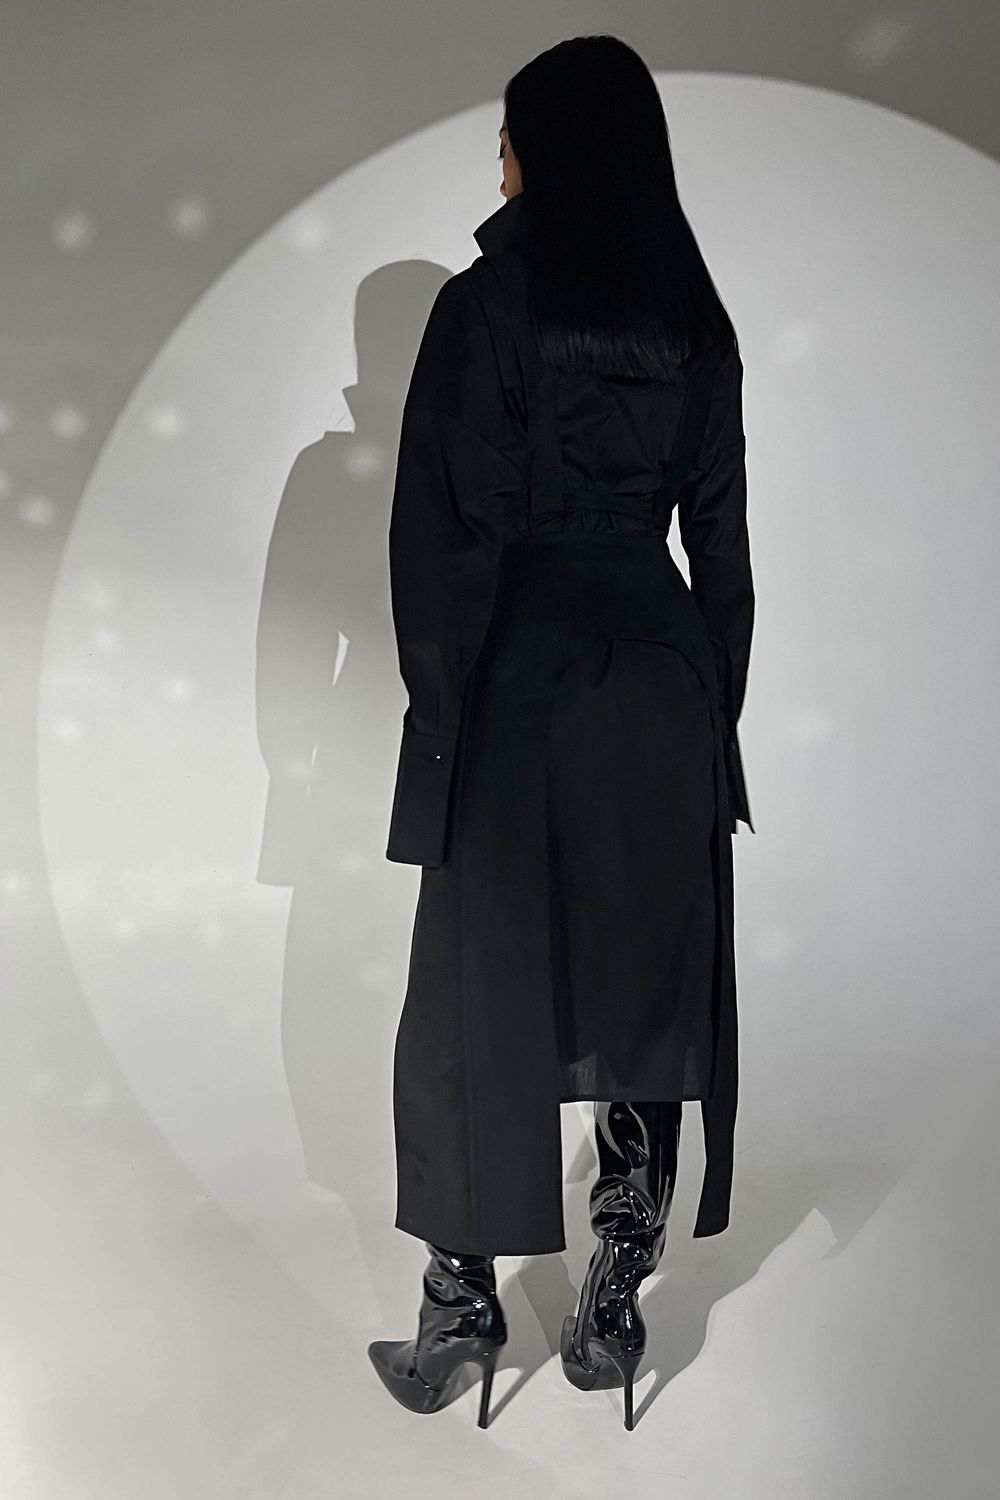 Стильне чорне плаття сорочка з портупеєю - фото